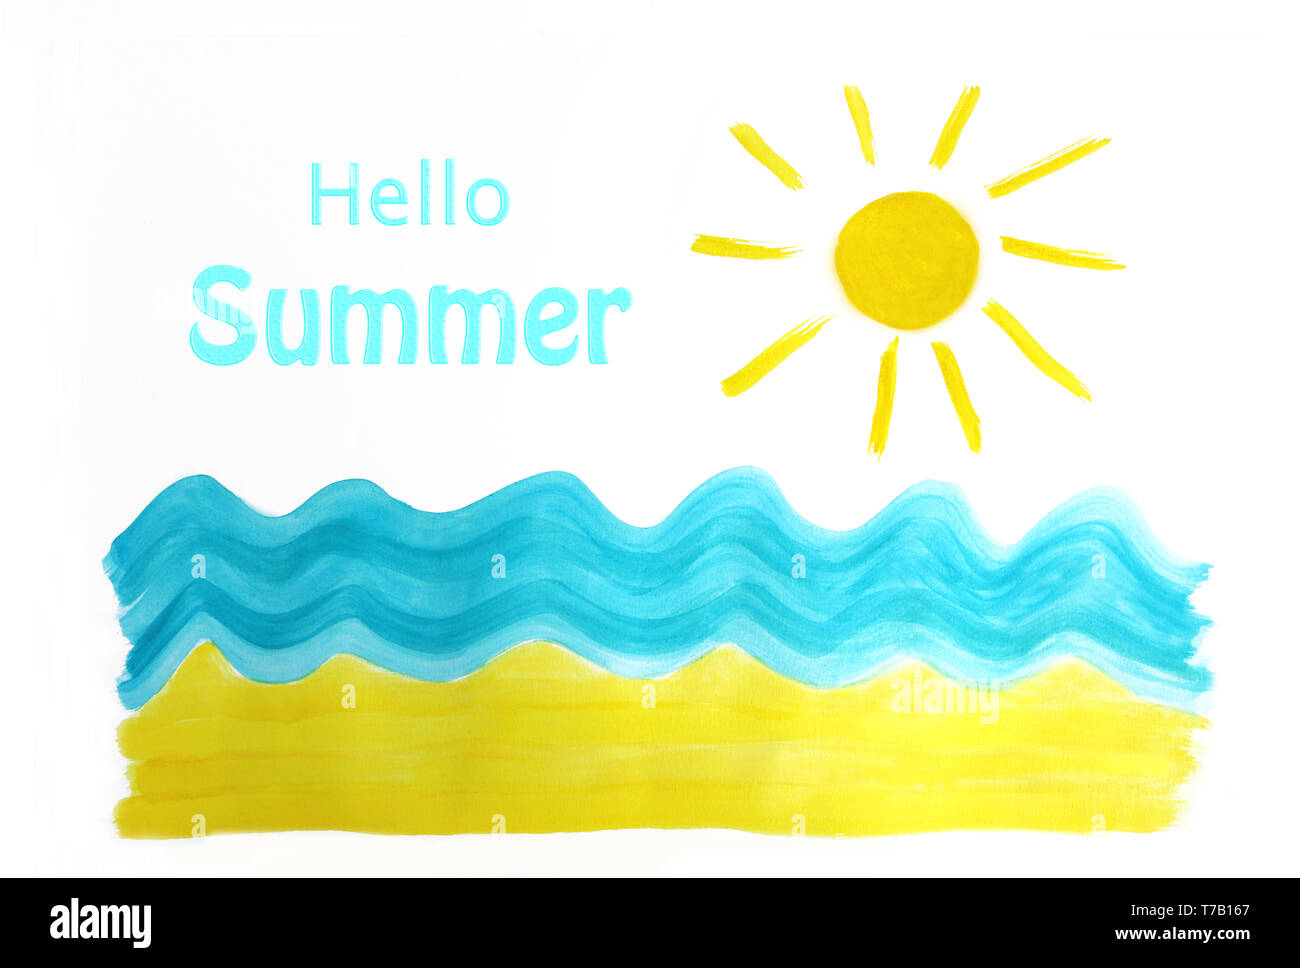 Ciao Estate; in spiaggia, giallo e turchese acquerello su carta bianca, mostrando la sabbia, il mare e il sole estivo con raggi solari Foto Stock